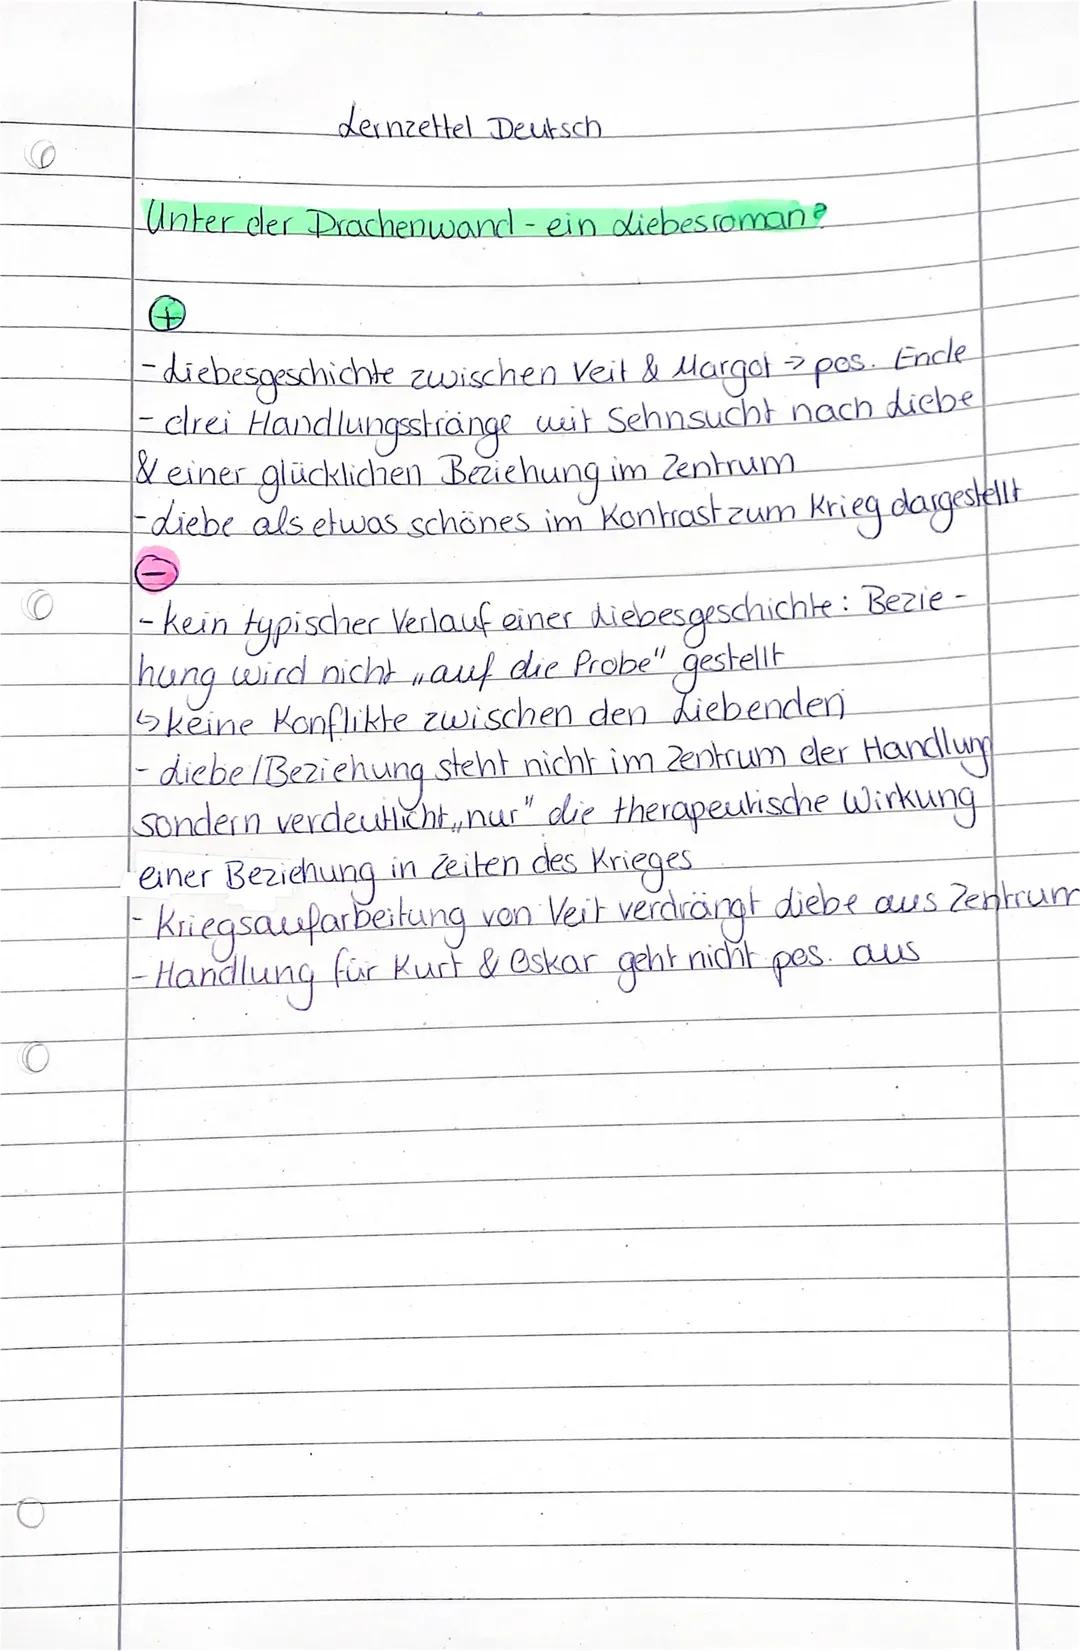 Lernzettel Deutsch
Unter der Drachenwand- ein Liebesroman?
A
Ende
-diebesgeschichte zwischen Veit & Margot > pos.
- drei Handlungsstränge wi